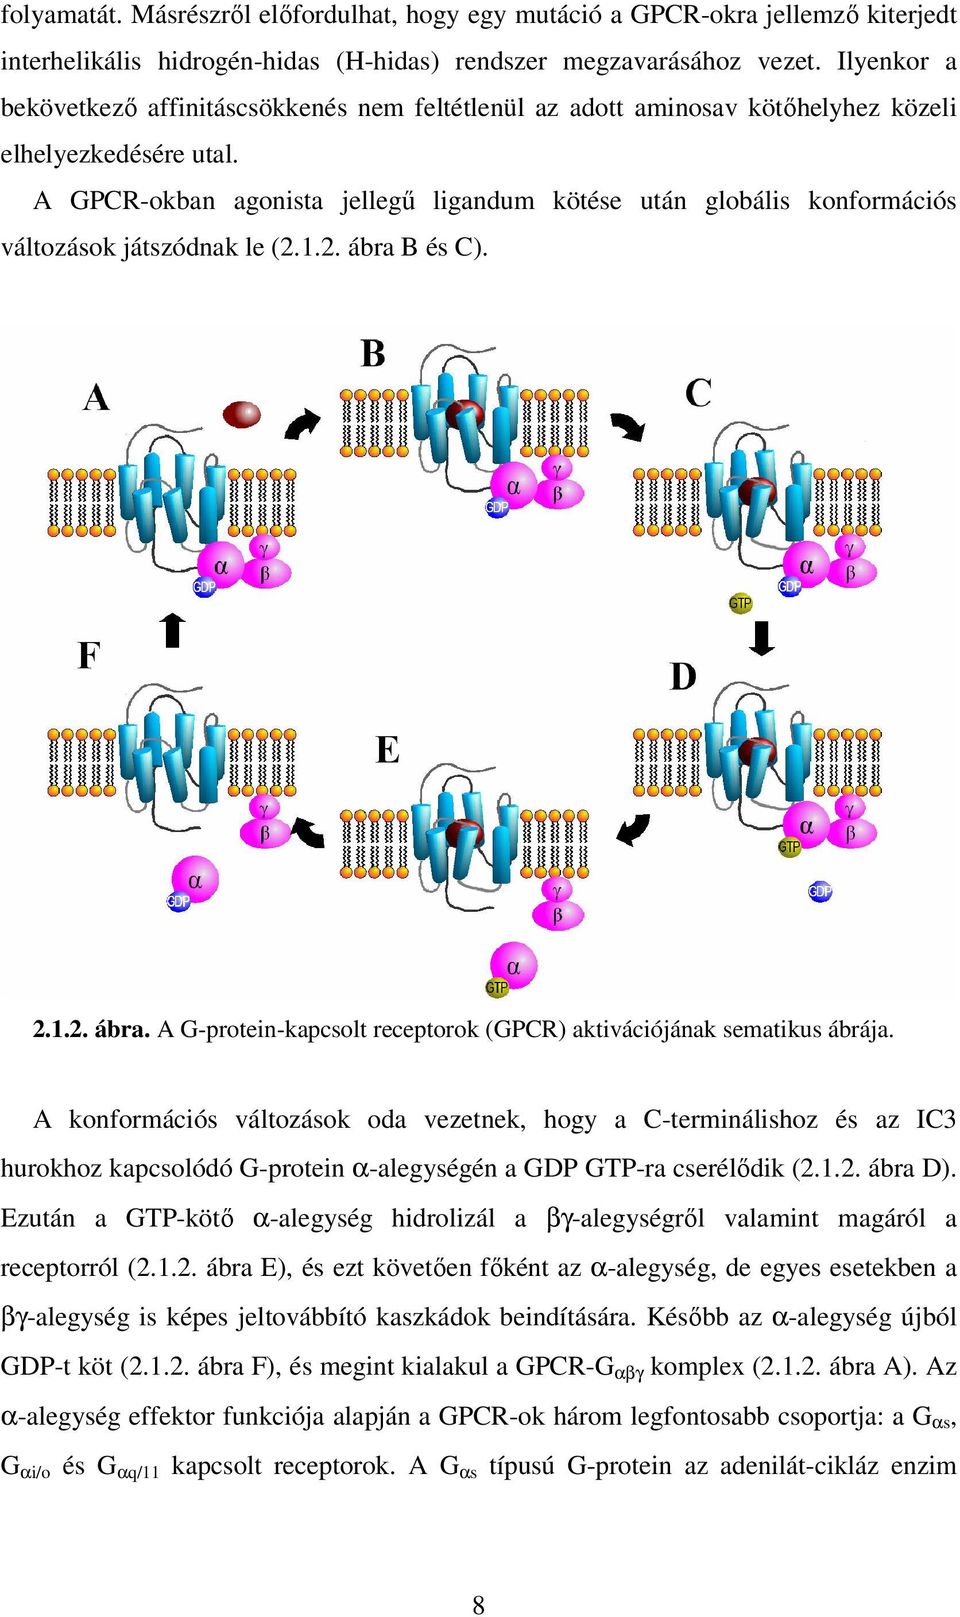 A GPCR-okban agonista jellegű ligandum kötése után globális konformációs változások játszódnak le (2.1.2. ábra B és C). 2.1.2. ábra. A G-protein-kapcsolt receptorok (GPCR) aktivációjának sematikus ábrája.